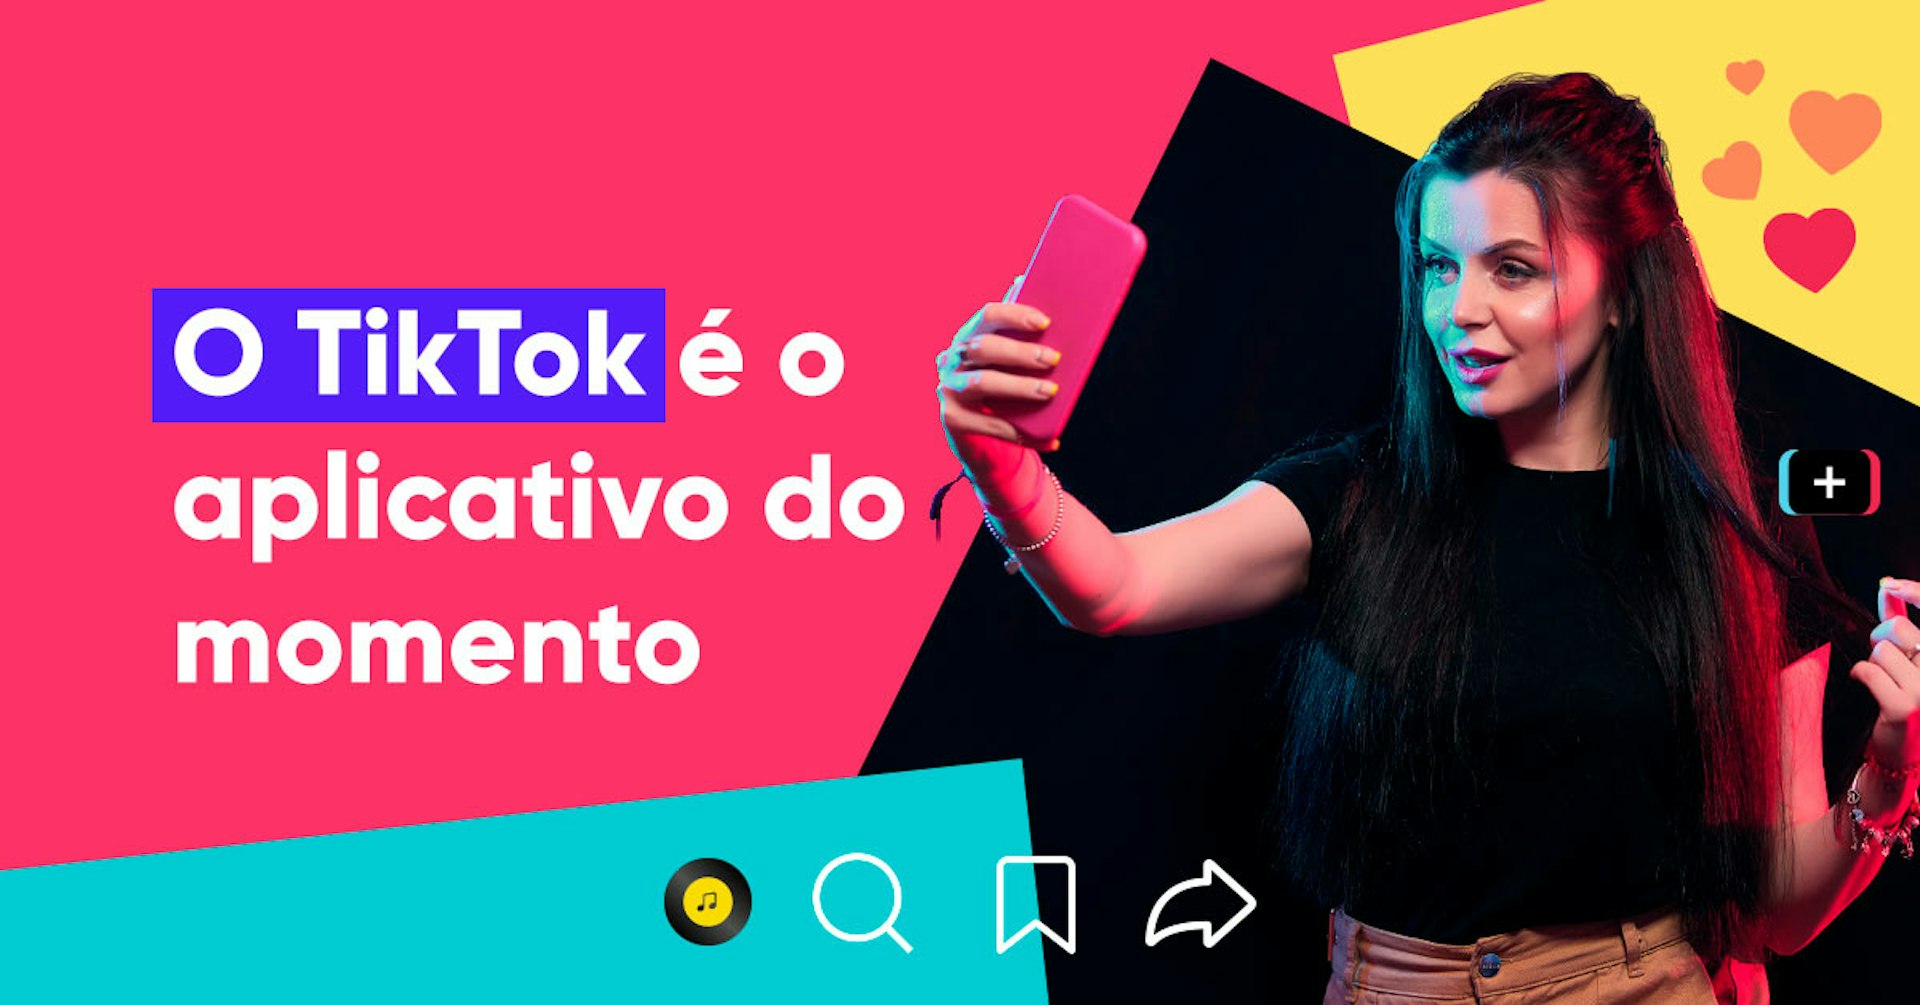 O TikTok é o aplicativo do momento! Como fazer tiktoks e viralizar meus vídeos?